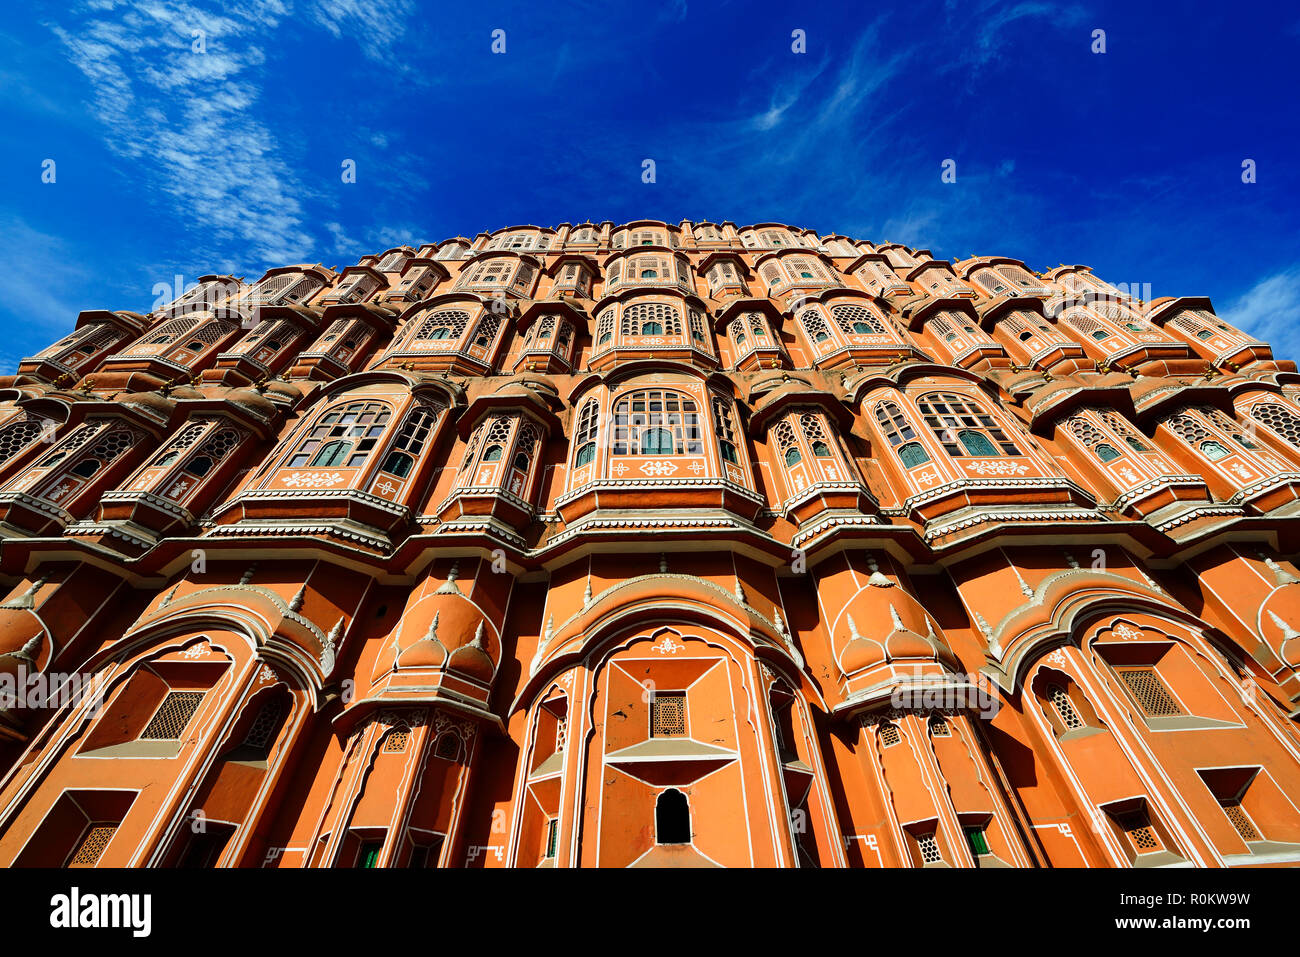 Facade, Hawa Mahal, Palace of the Winds, Jaipur, Rajasthan, India Stock Photo